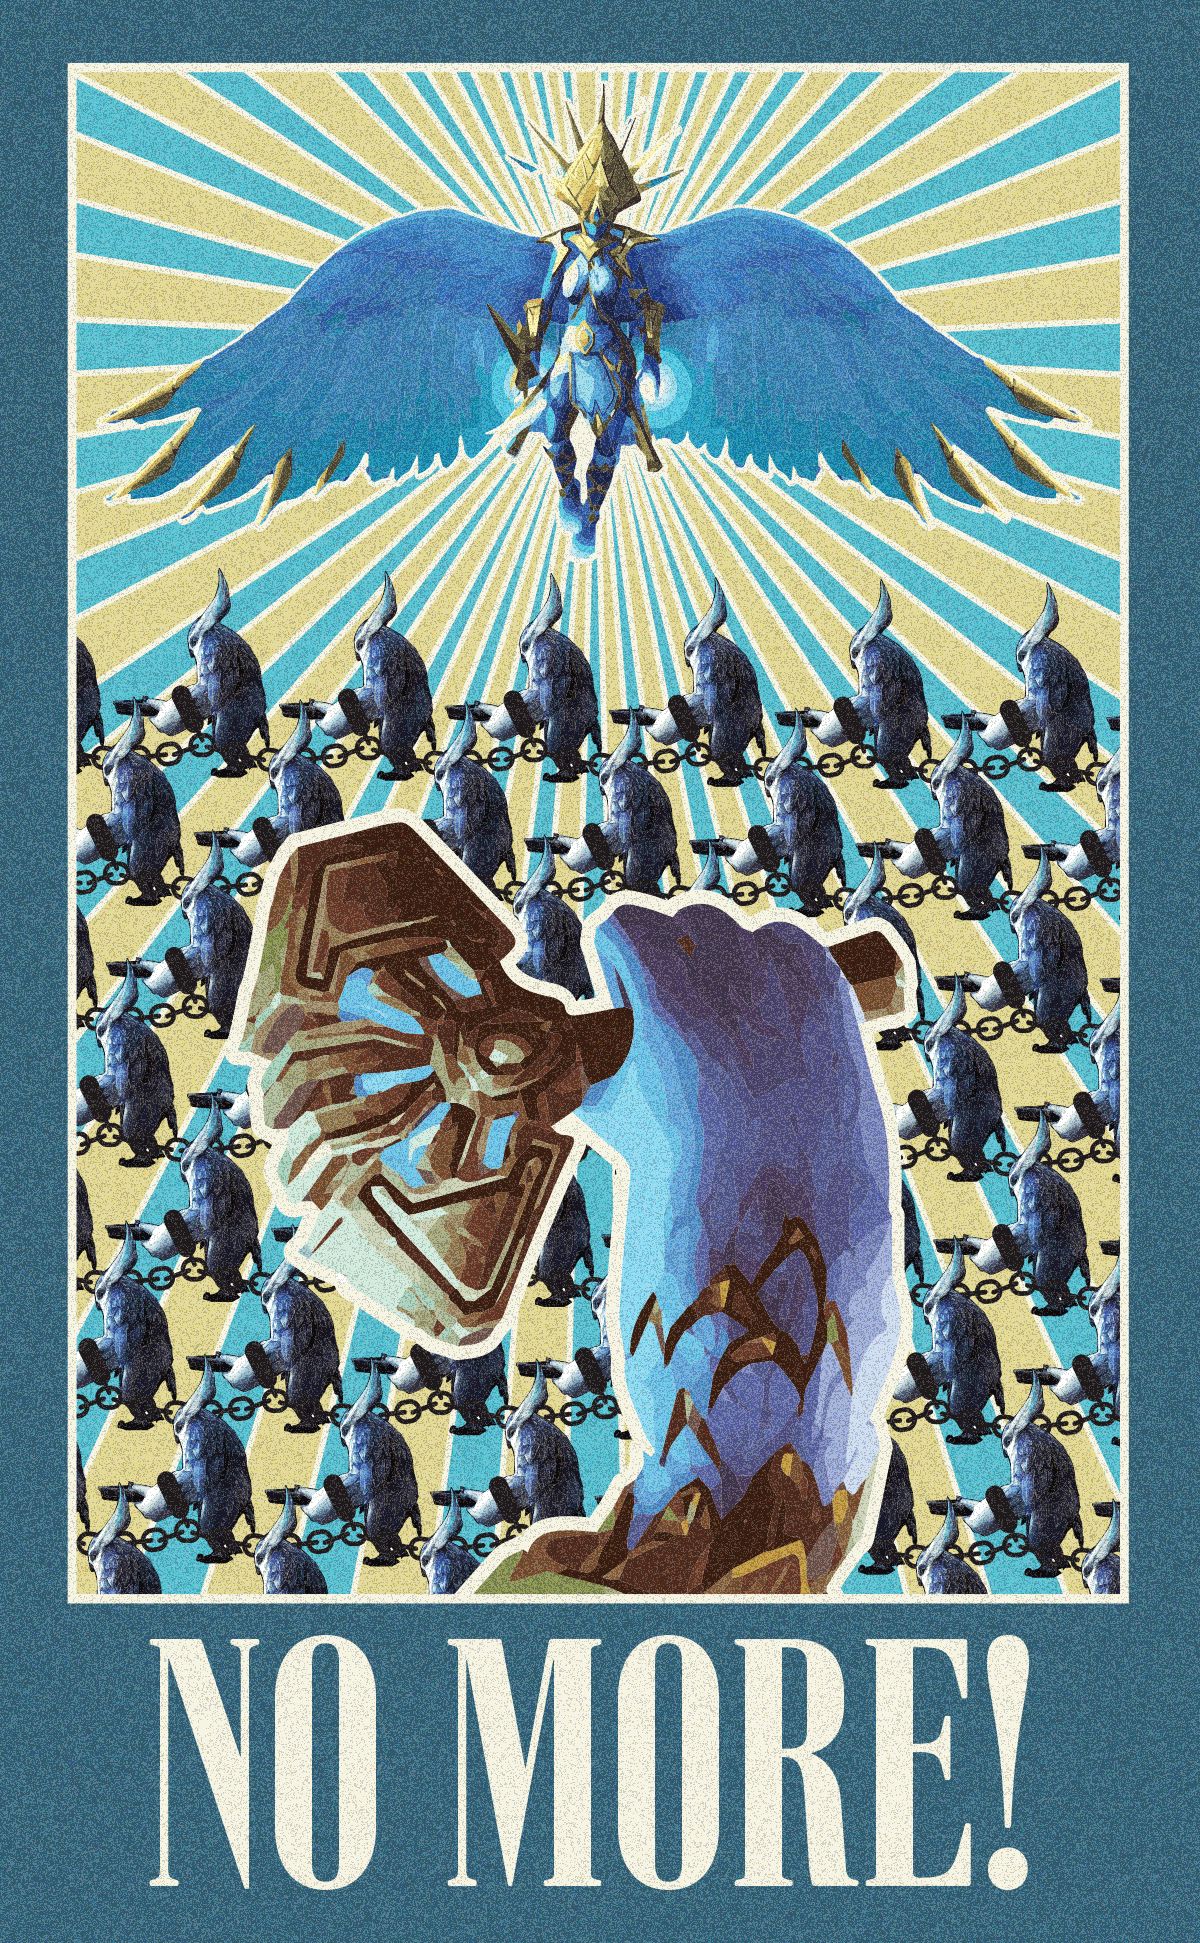 Плакат с призывом освободить распорядителей. Источник: reddit